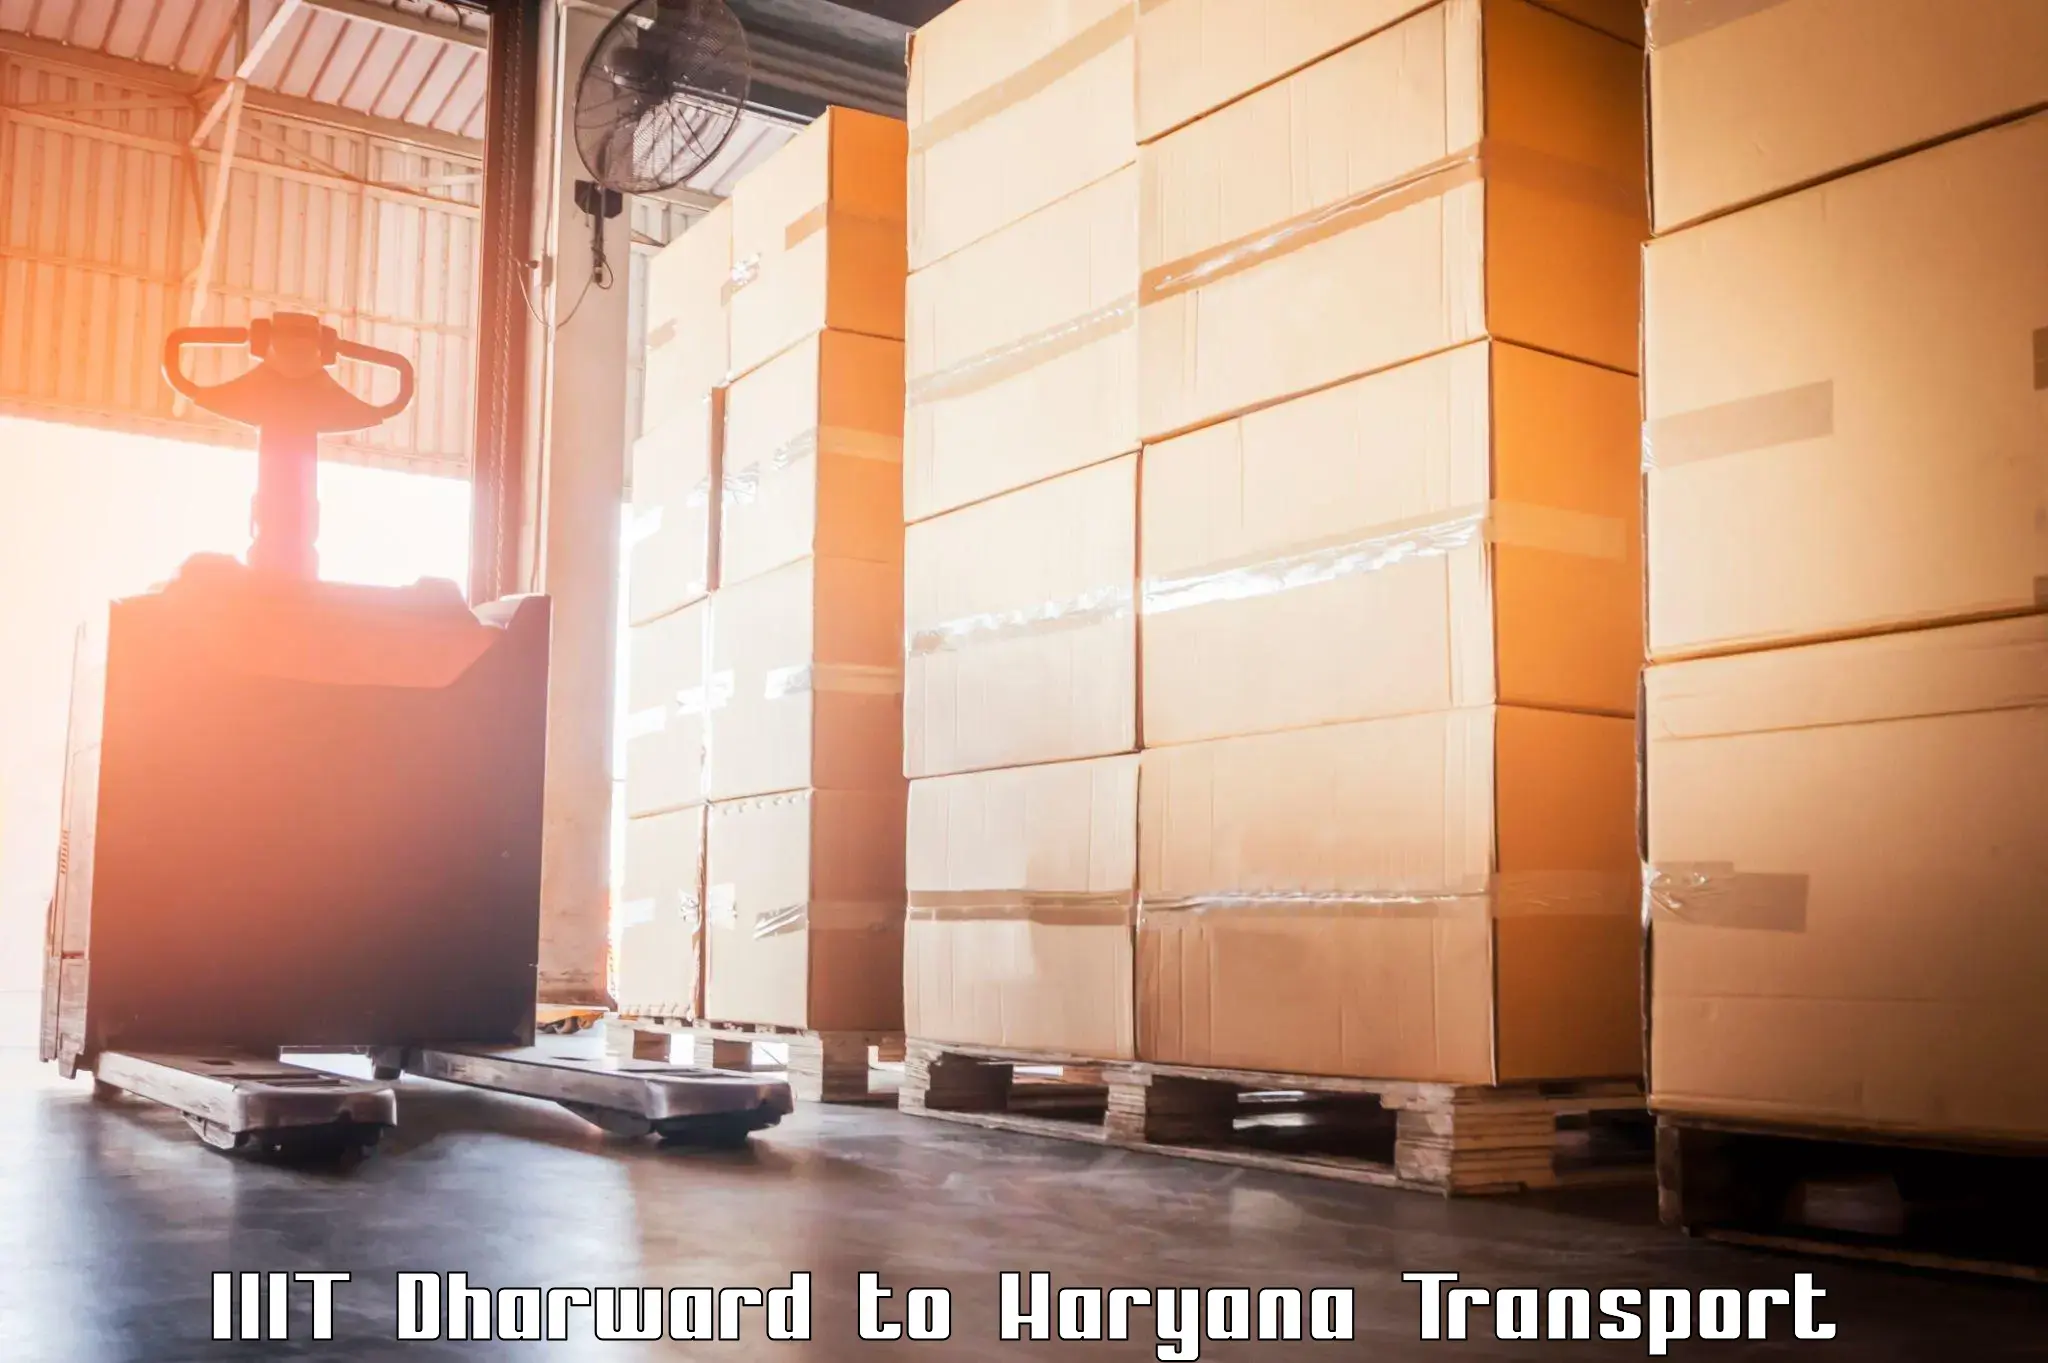 Cargo transport services IIIT Dharward to Bahadurgarh